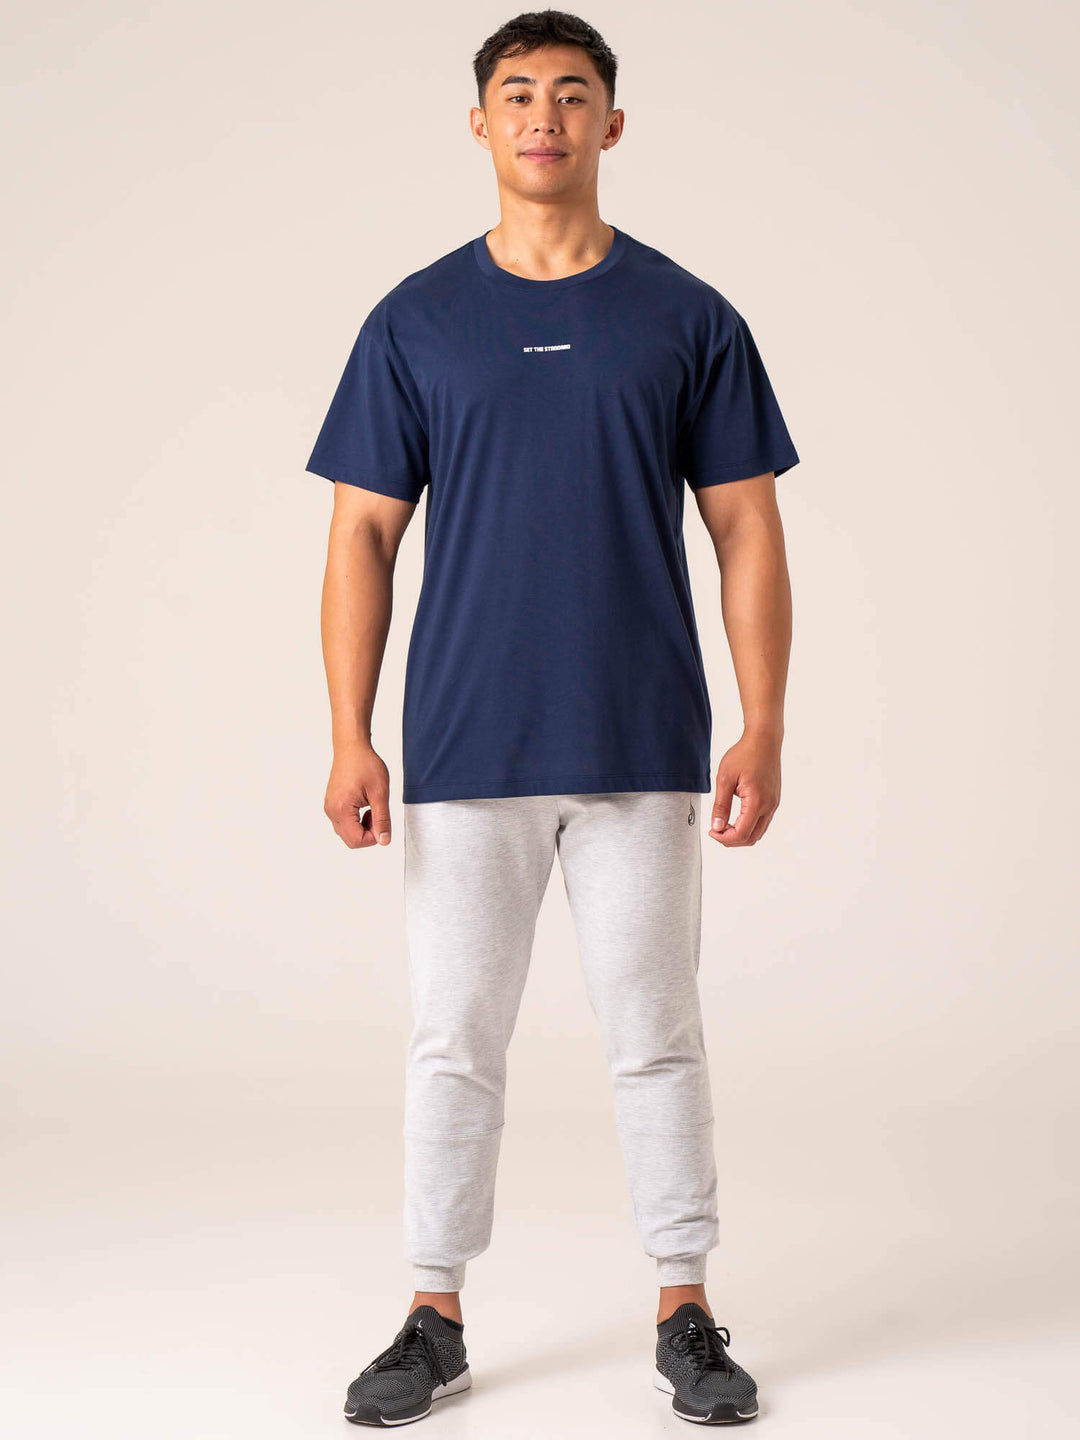 Emerge Oversized T-Shirt - Navy Clothing Ryderwear 